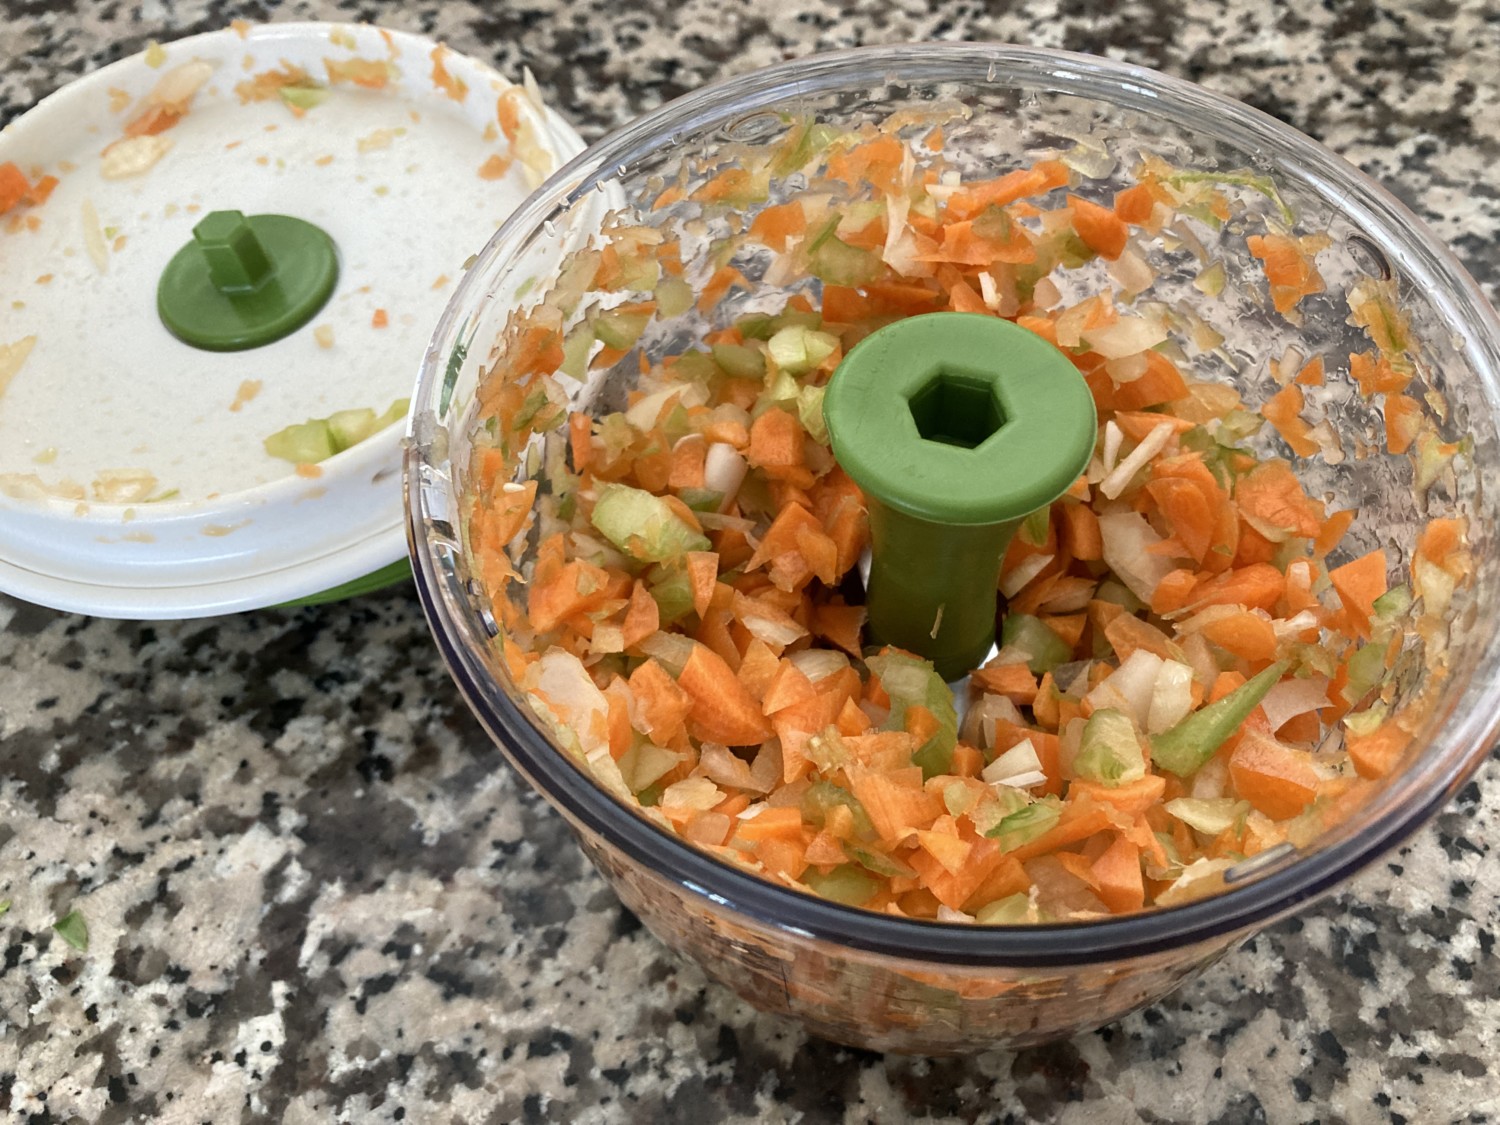 Chef'n Salad Chopper Spinner